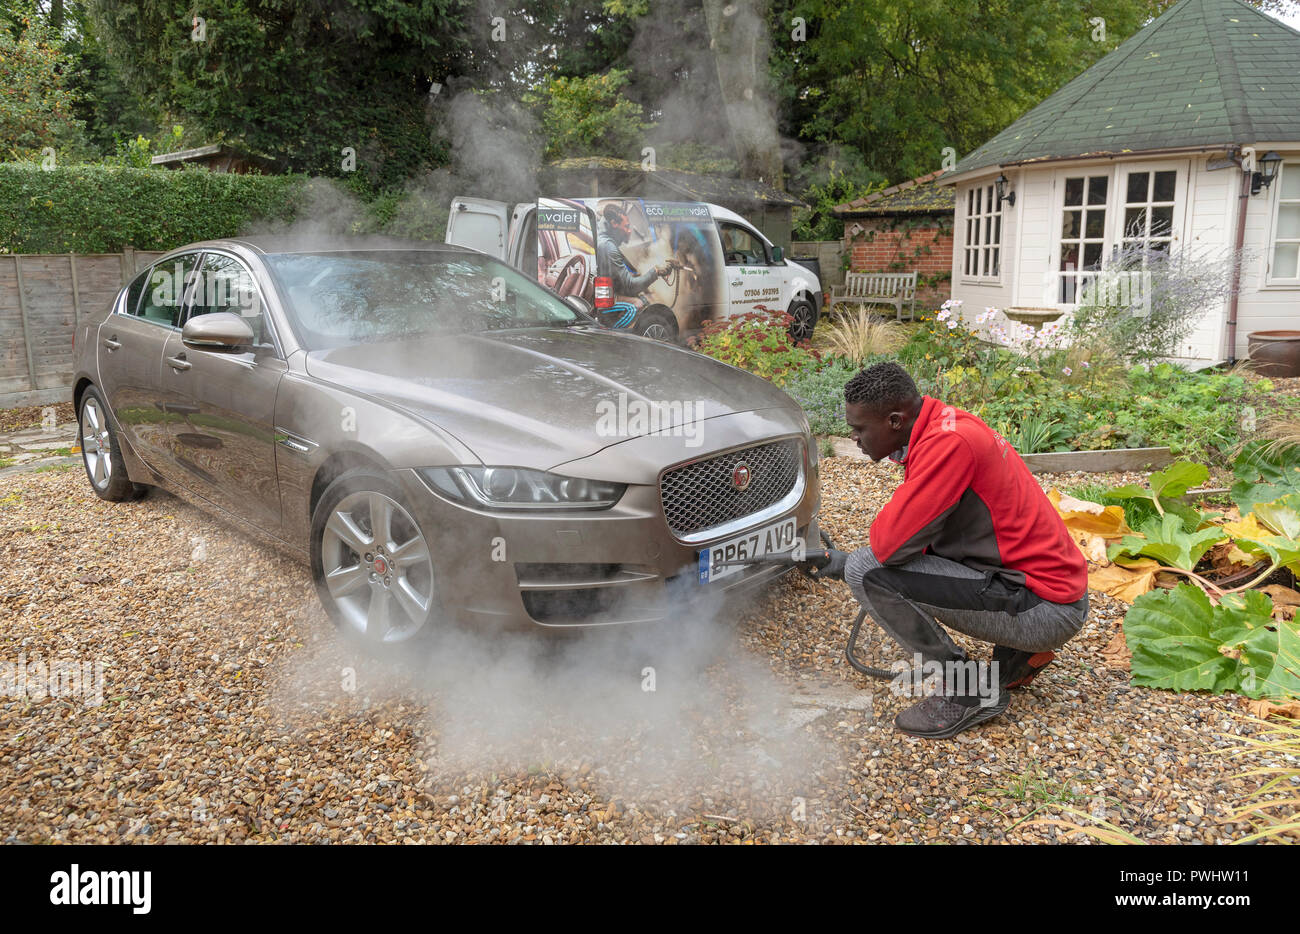 Nettoyage à la vapeur de l'homme l'extrémité avant d'une voiture de luxe sur de visites à domicile, un service de valet, England UK Banque D'Images